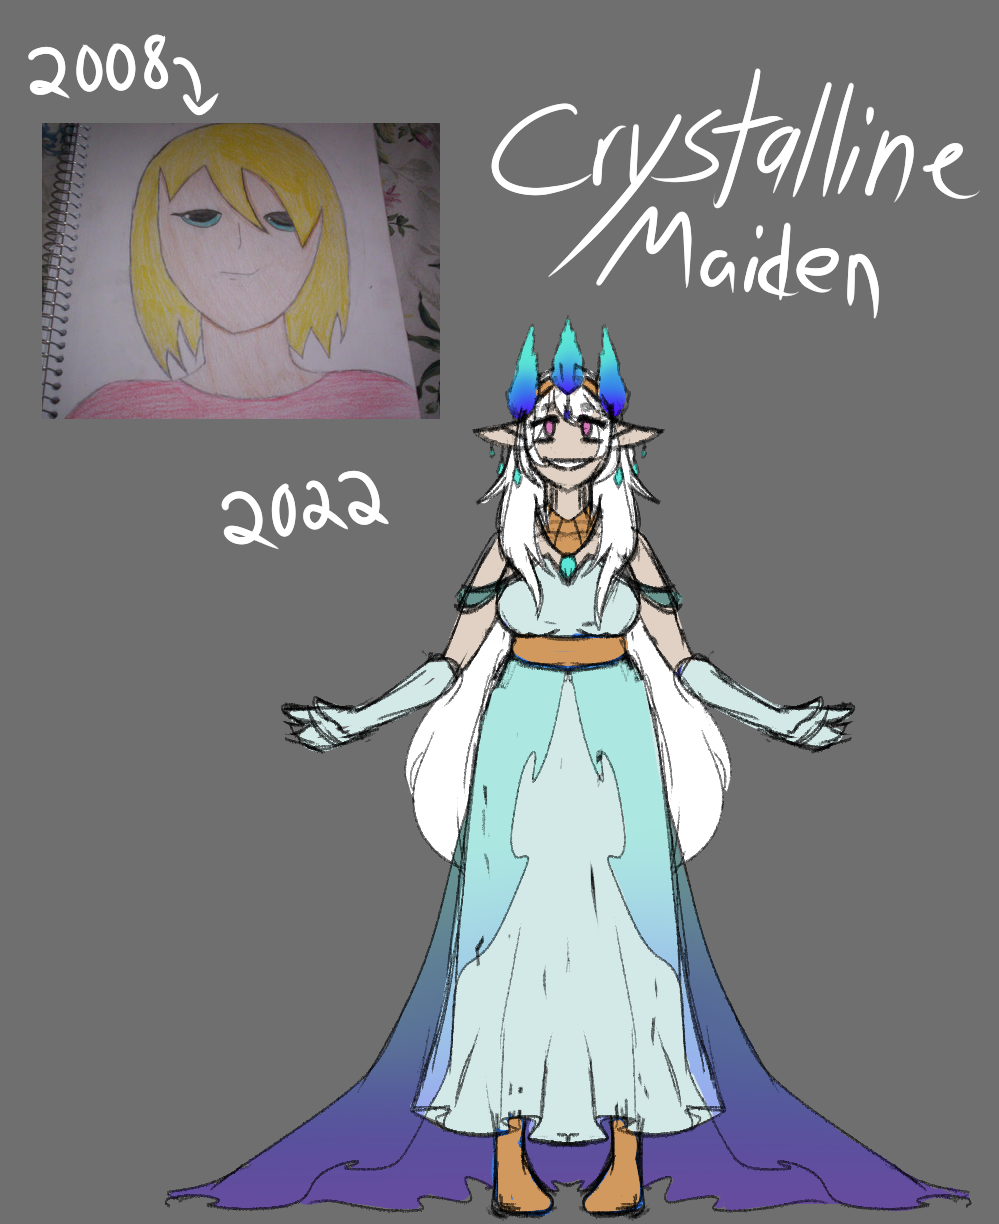 [OC] The Crystalline Maiden